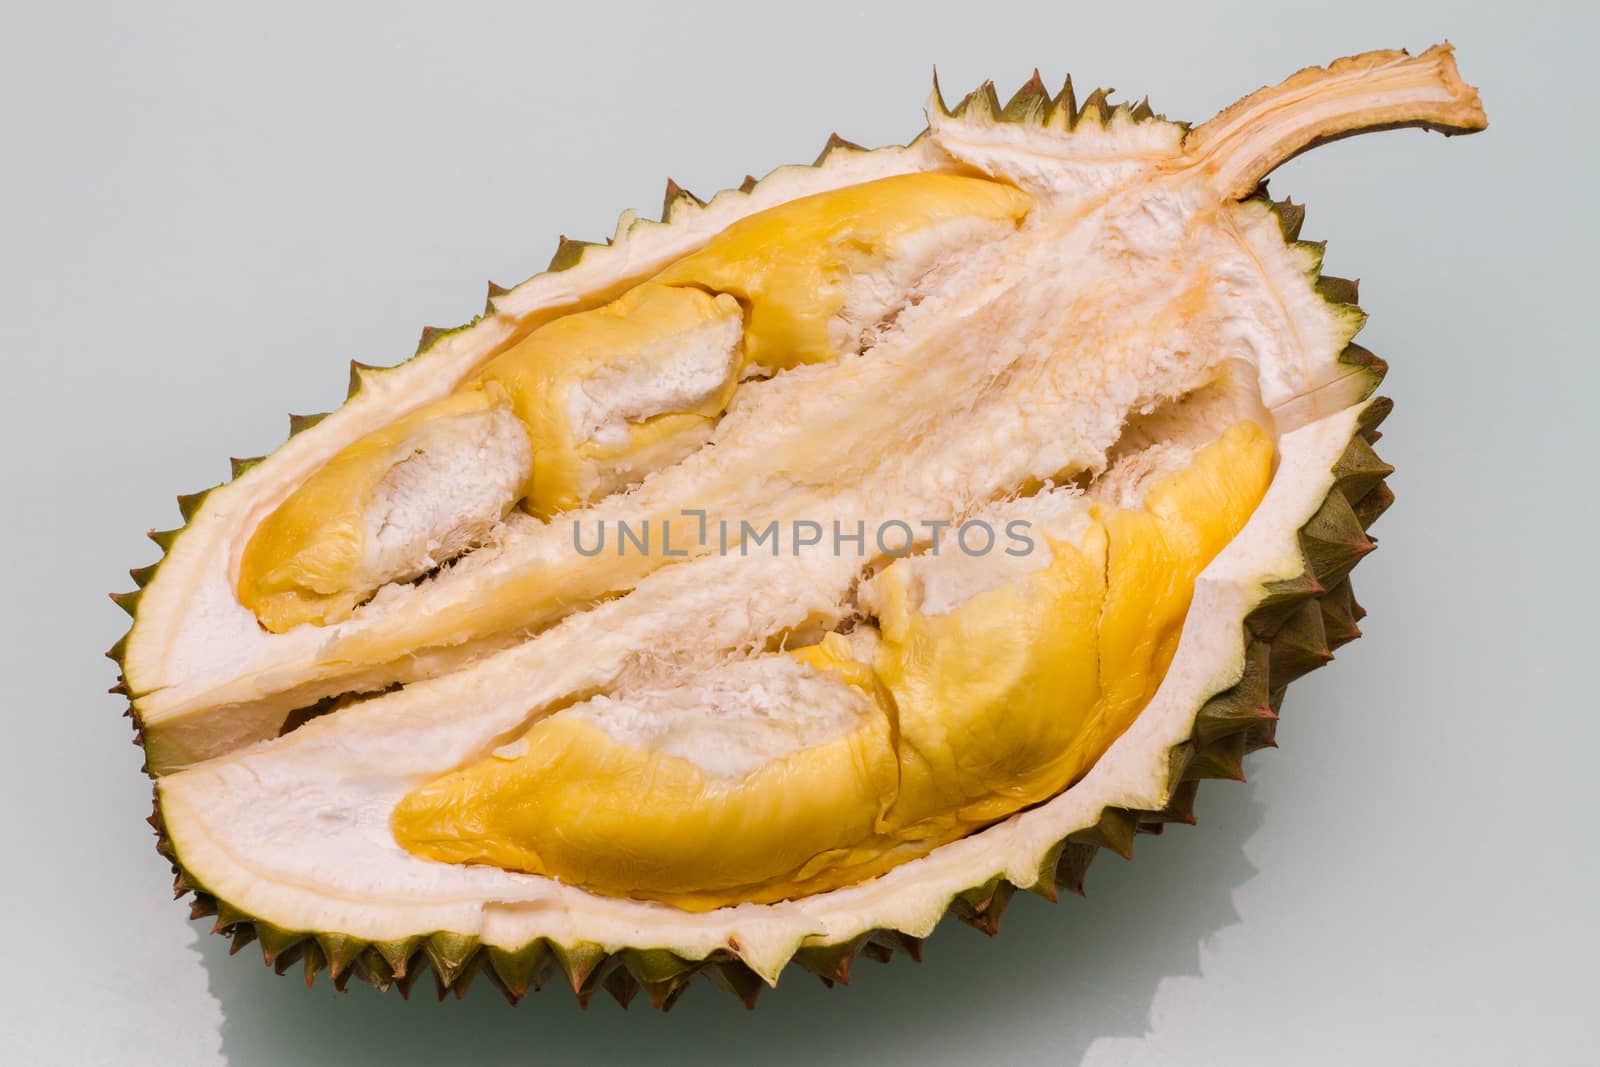 Durian by kiankhoon